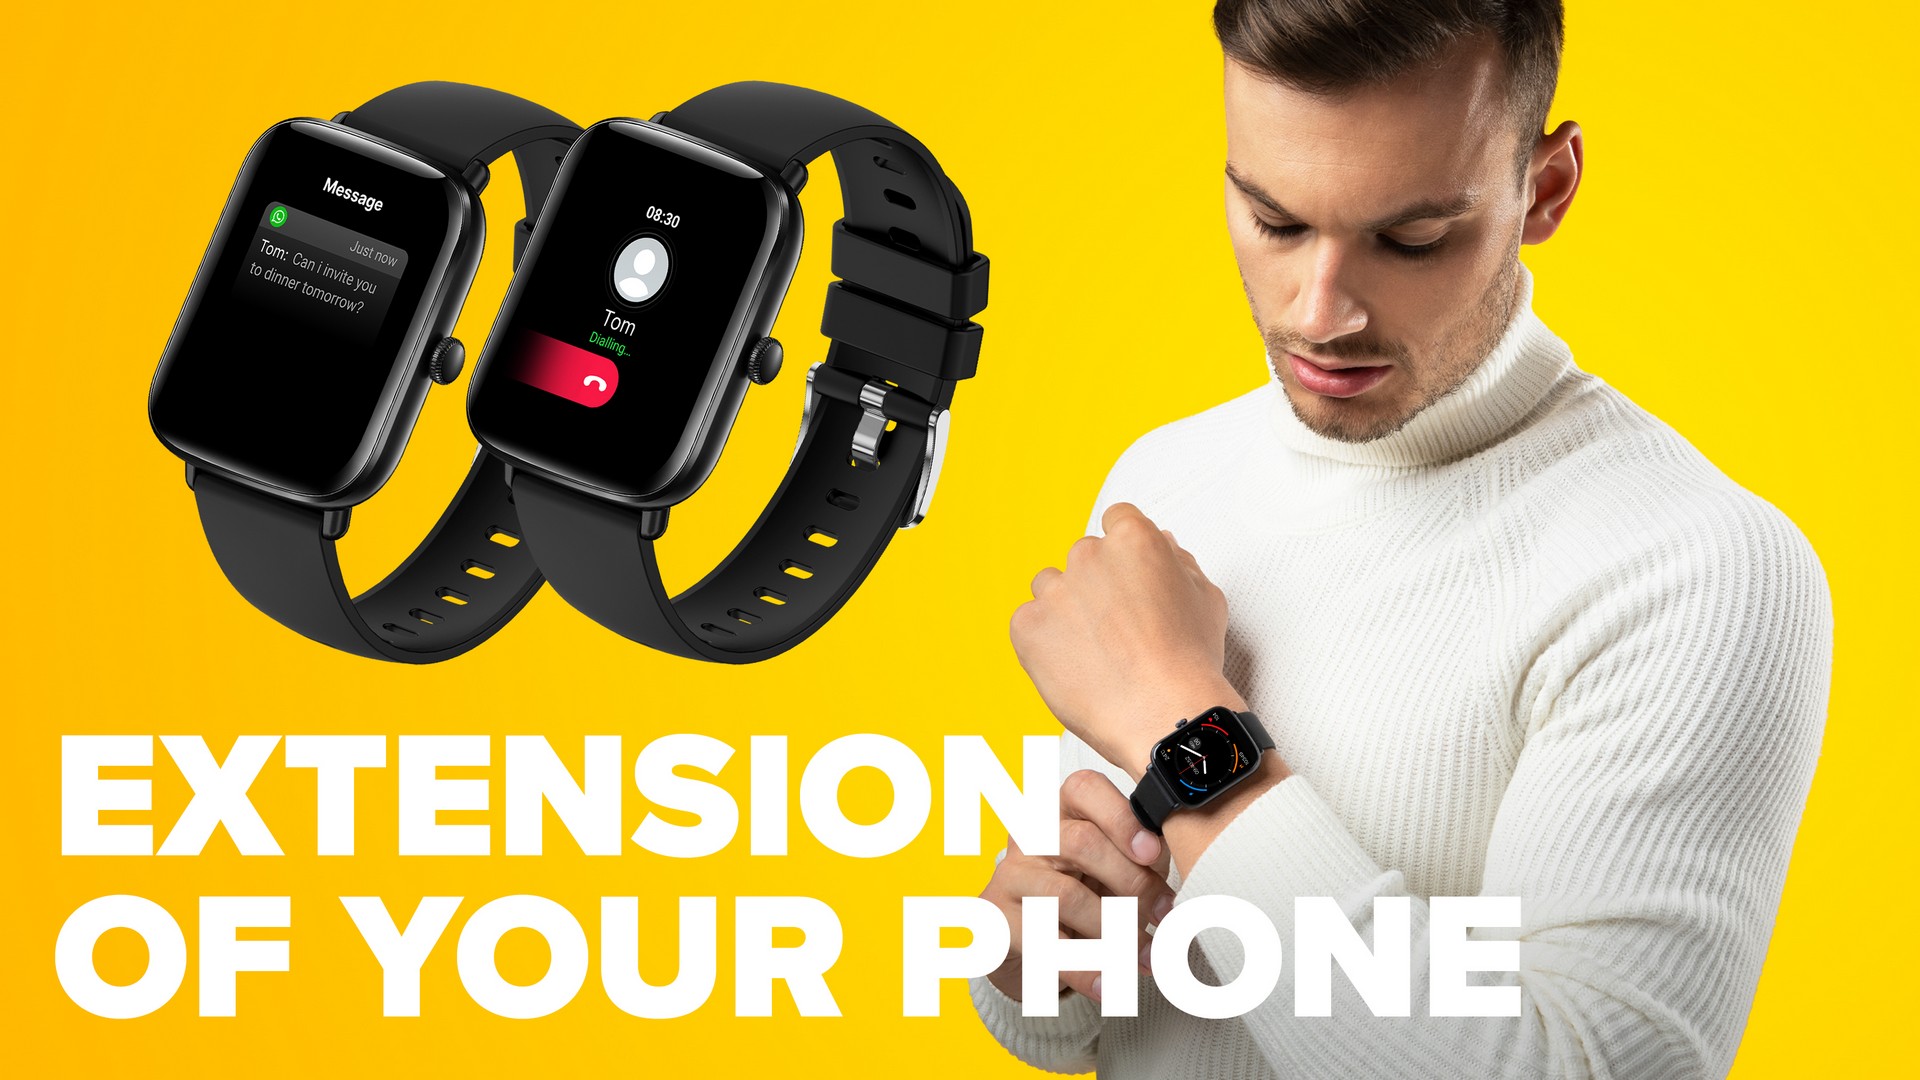 Chytré hodinky Niceboy Watch Lite 3 sú vybavené reproduktorom a mikrofónom na vybavovanie telefónnych hovorov priamo z vášho zápästia.